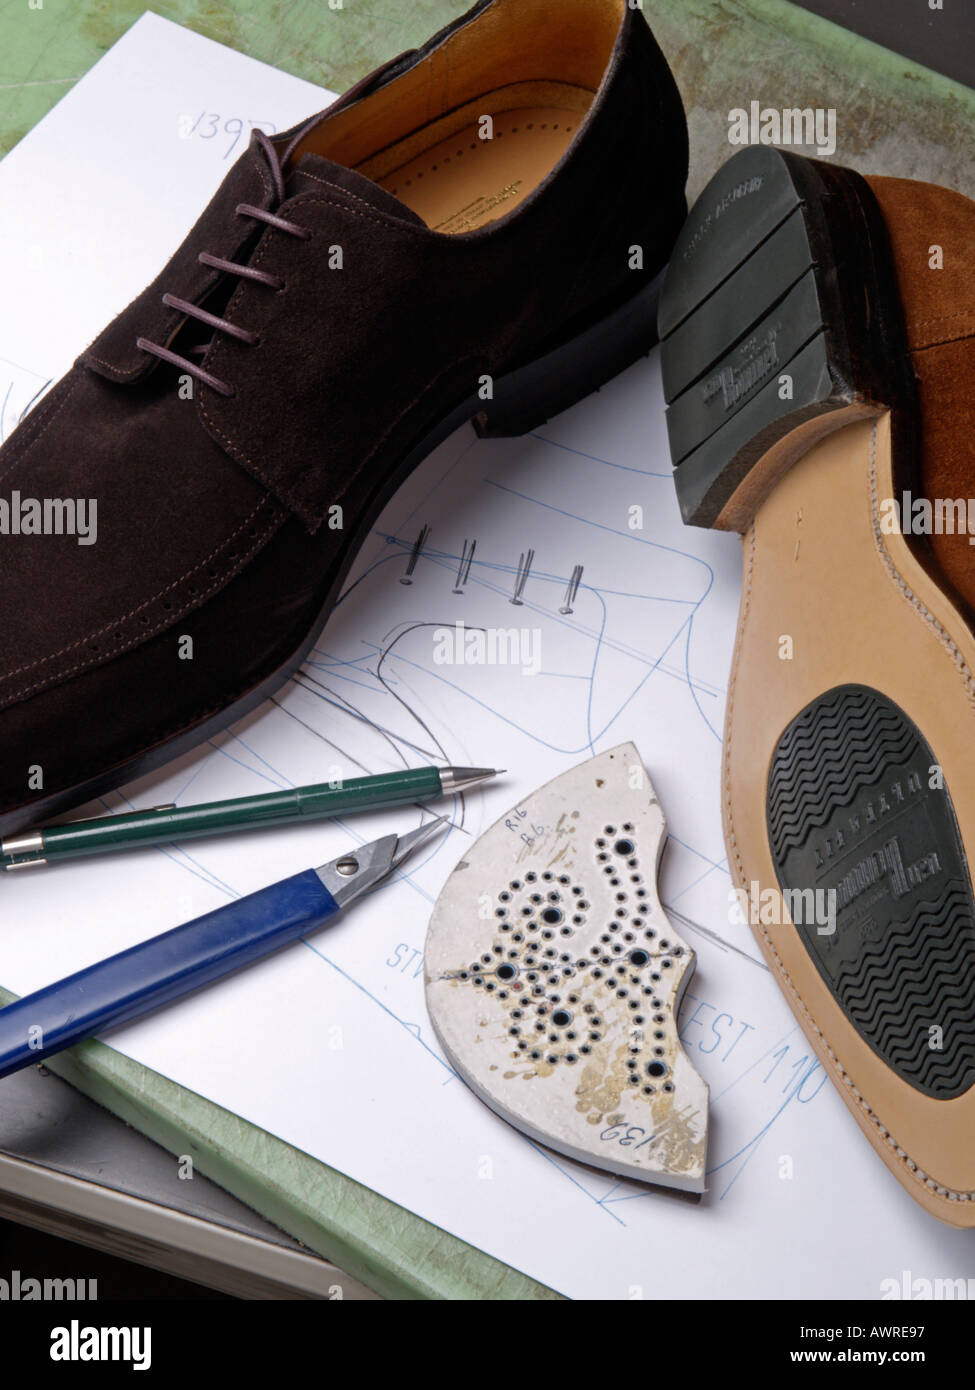 Calzature scarpe design con matita di carta il disegno del coltello e due classici in pelle scamosciata scarpe mens dal marchio di lusso van Bommel Foto Stock